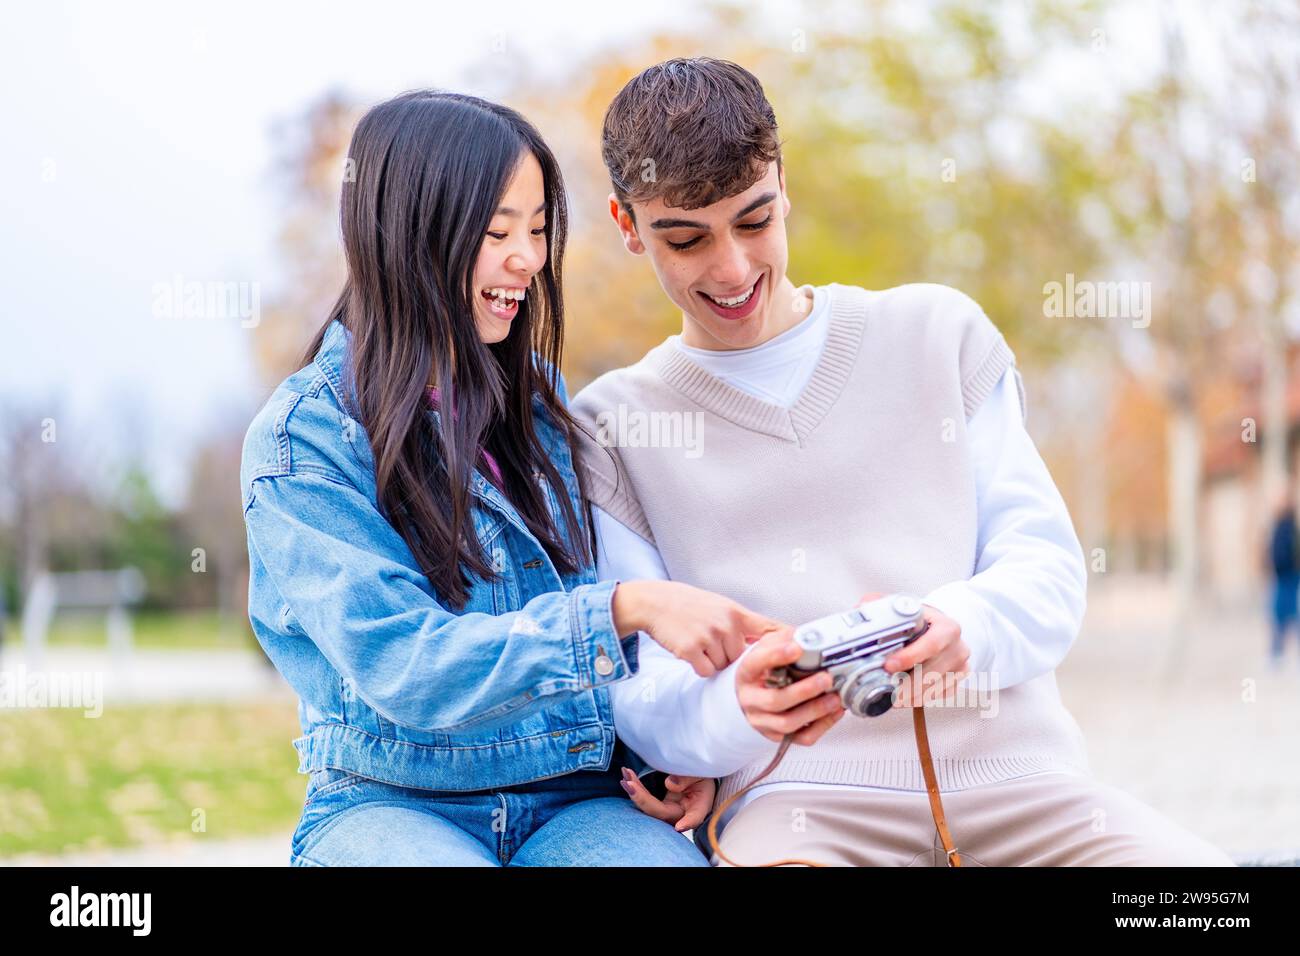 Junge Menschen, die Fotos auf dem Bildschirm einer Digitalkamera sehen Stockfoto